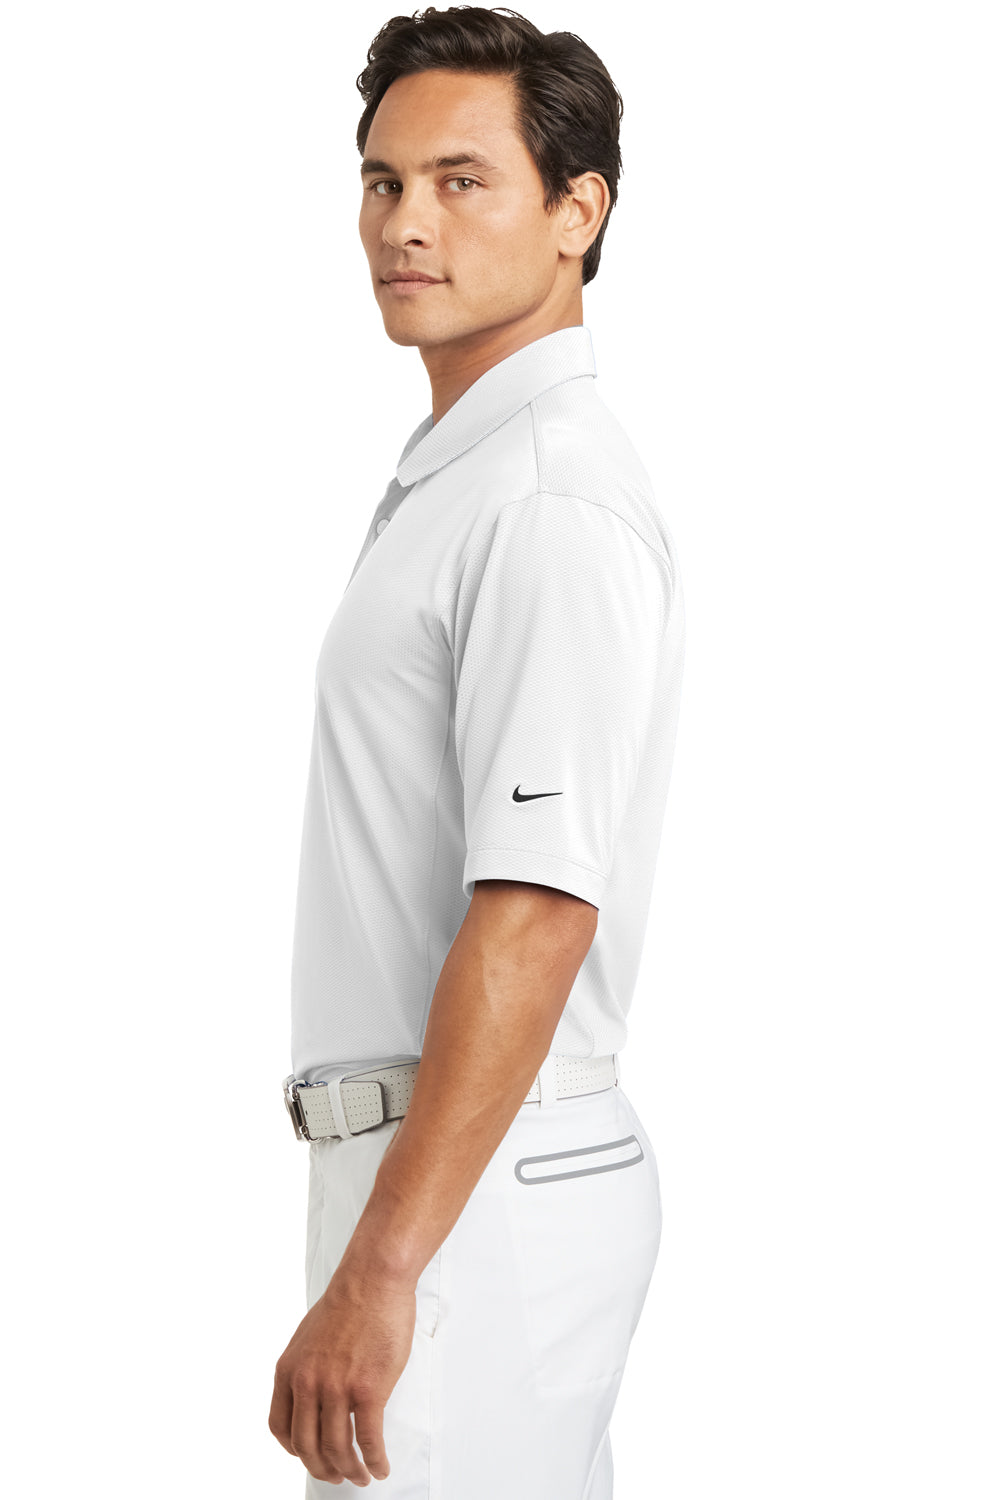 Nike 354055 Mens Sphere Dry Moisture Wicking Short Sleeve Polo Shirt White Side